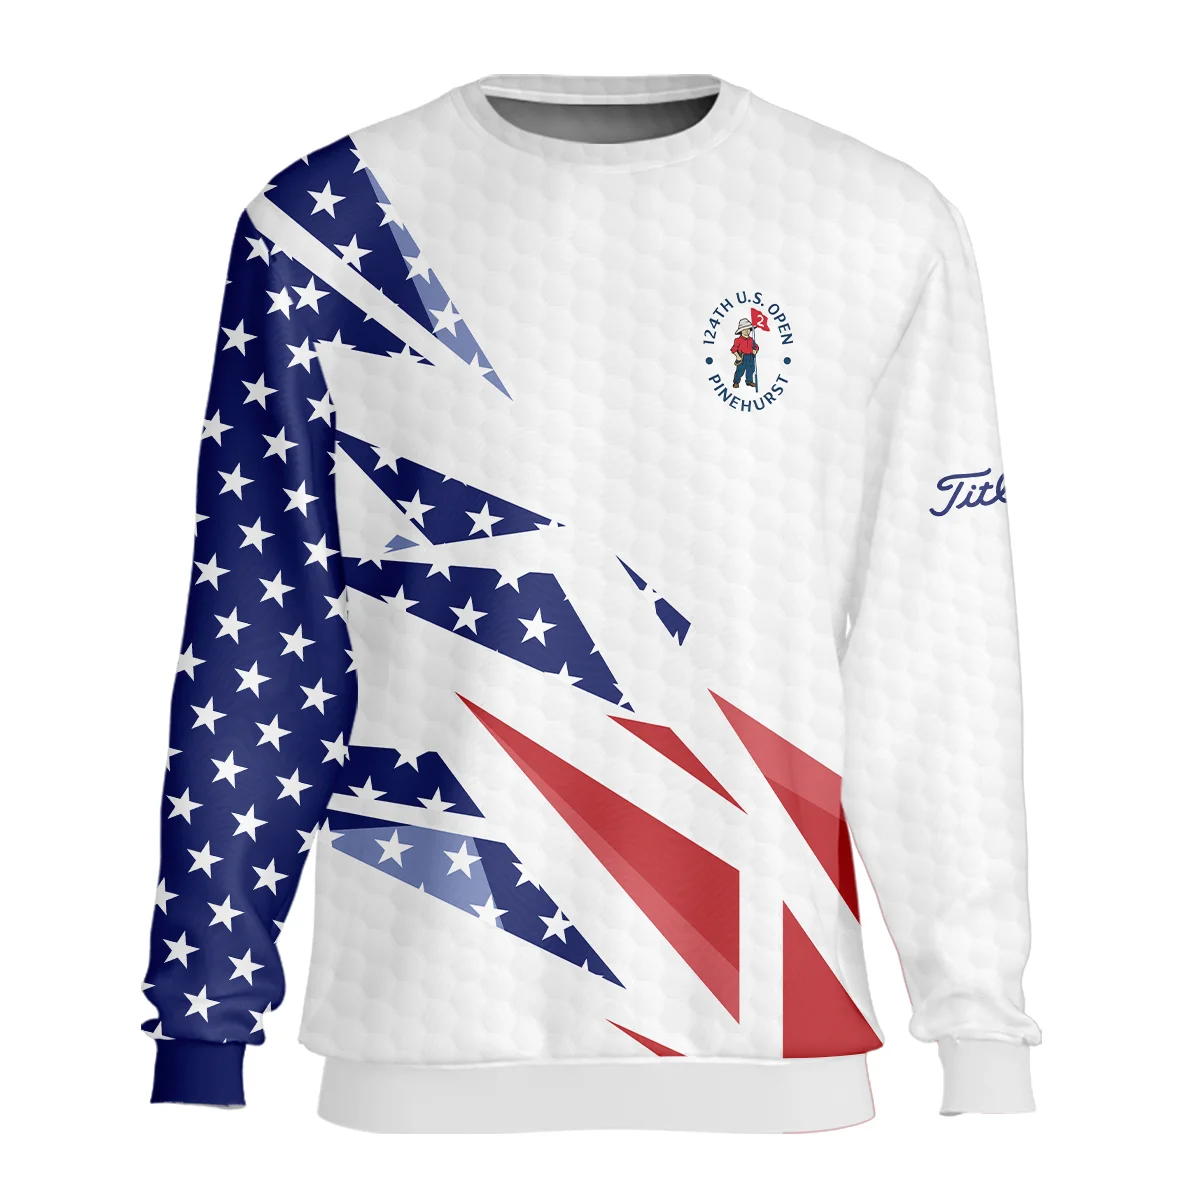 124th U.S. Open Pinehurst Titleist Bomber Jacket Golf Pattern White USA Flag All Over Print Bomber Jacket